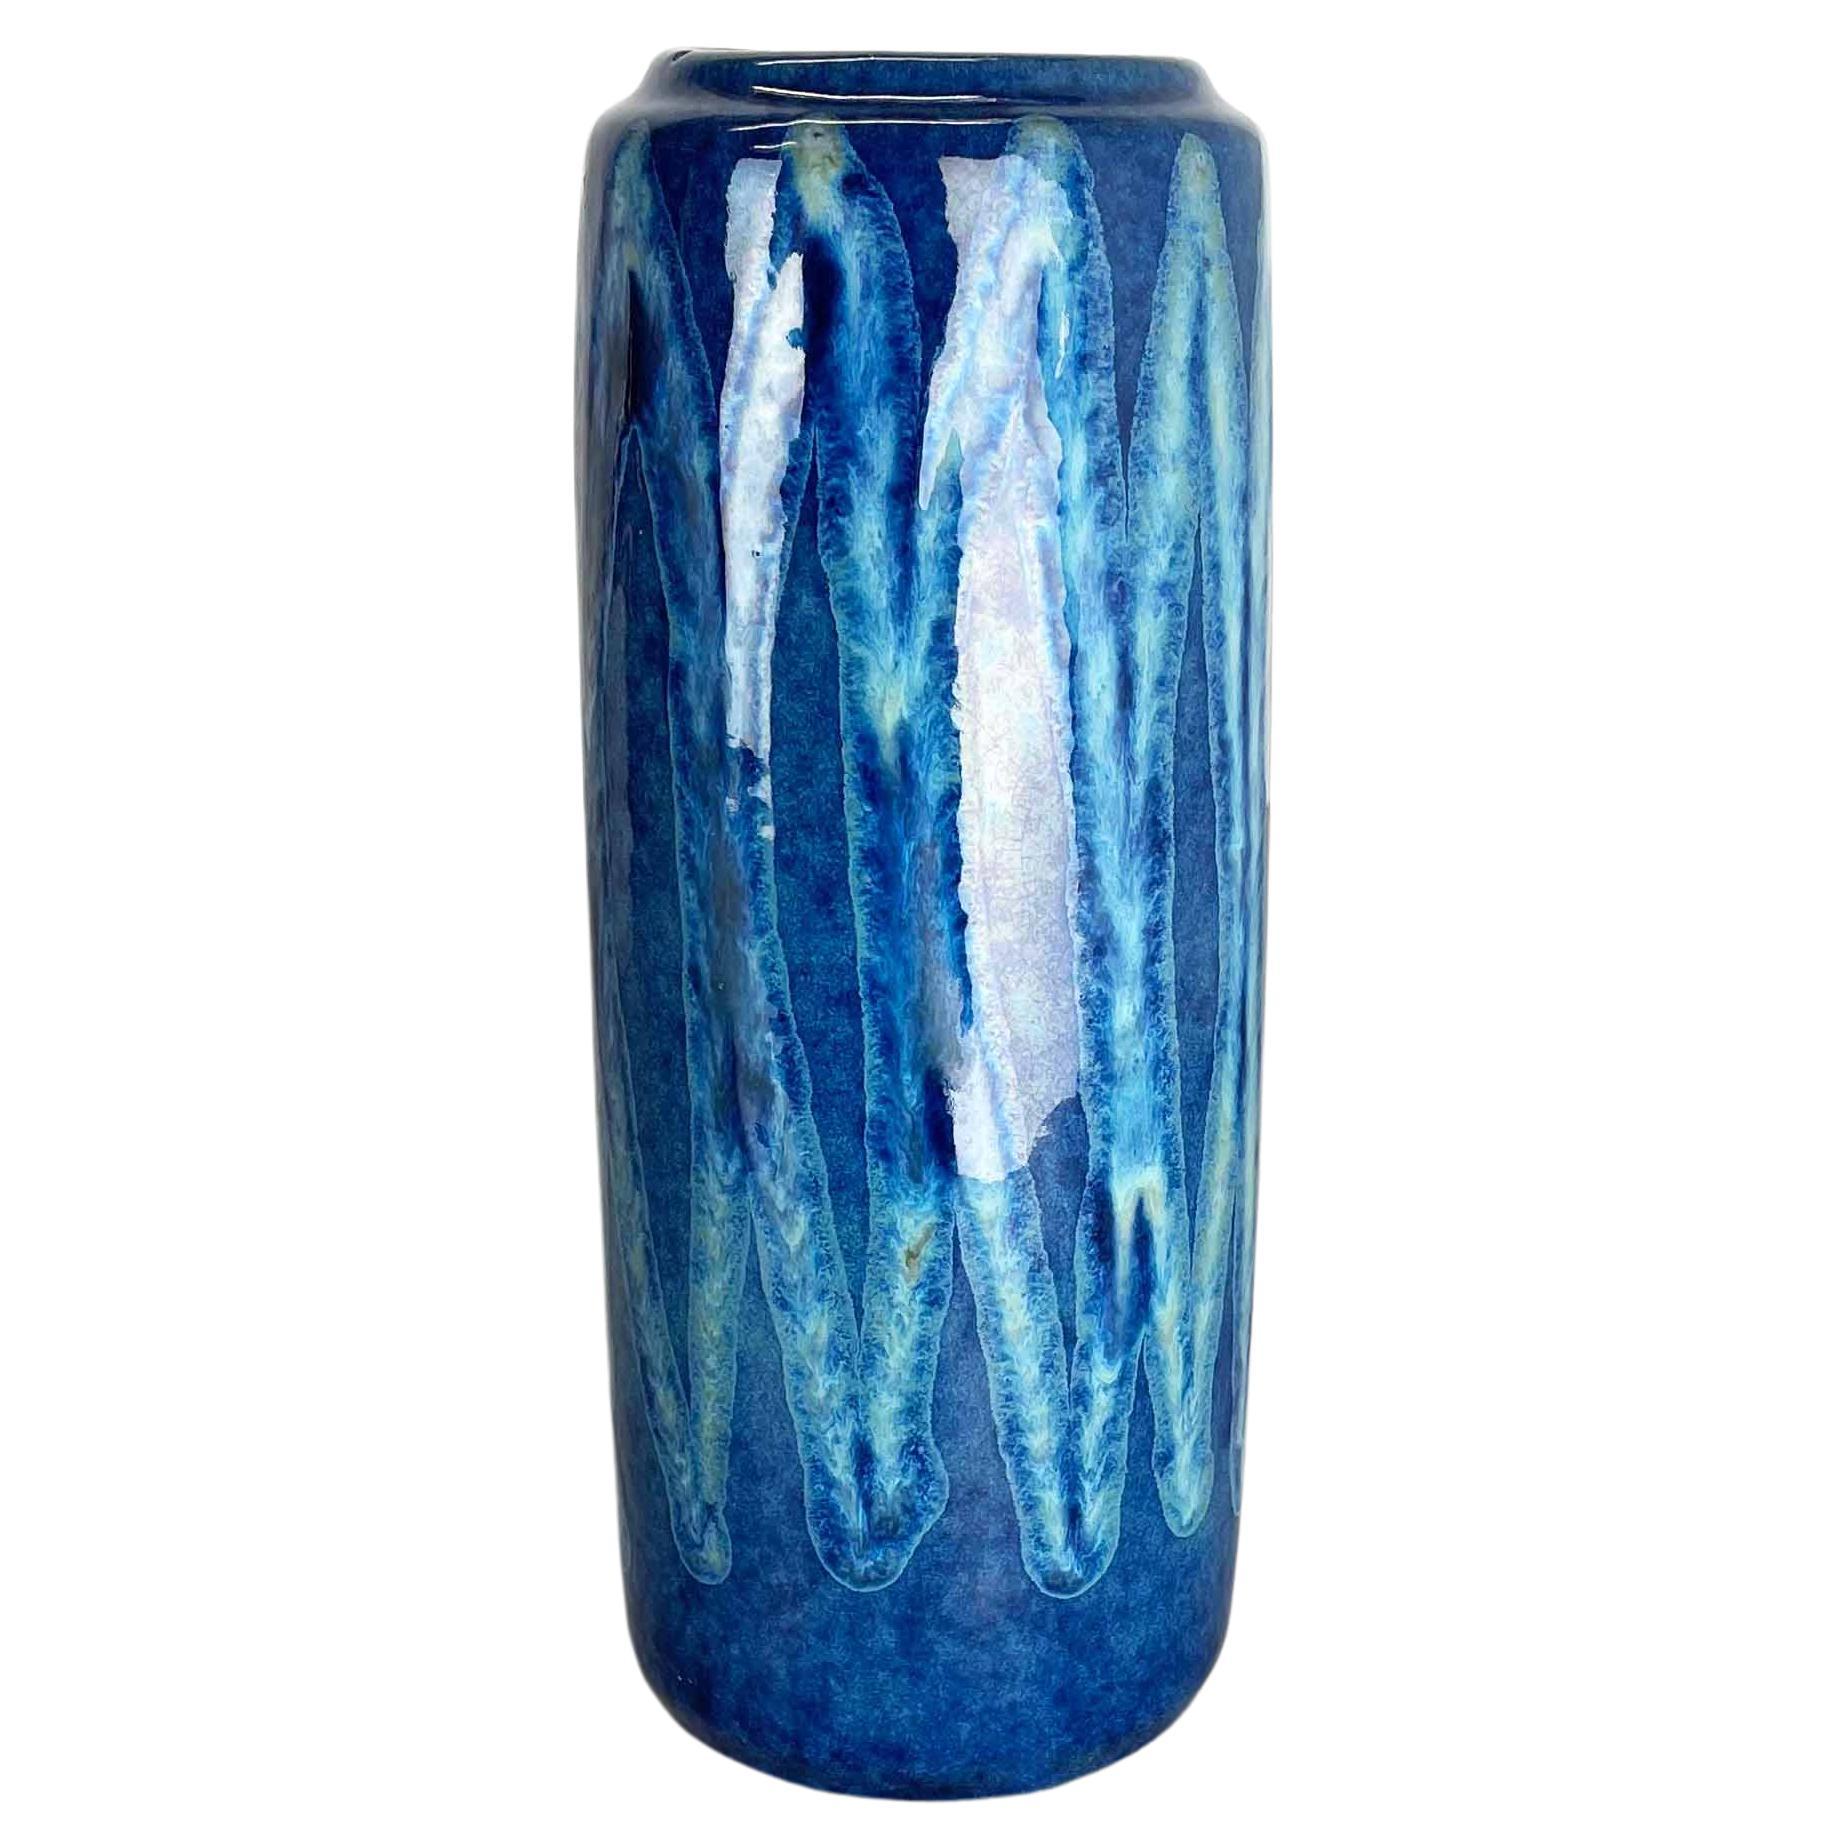 Seltene blaue „Zigzag“ Fat Lava Mehrfarbige Vase Scheurich, Deutschland Wgp 1970er Jahre, selten